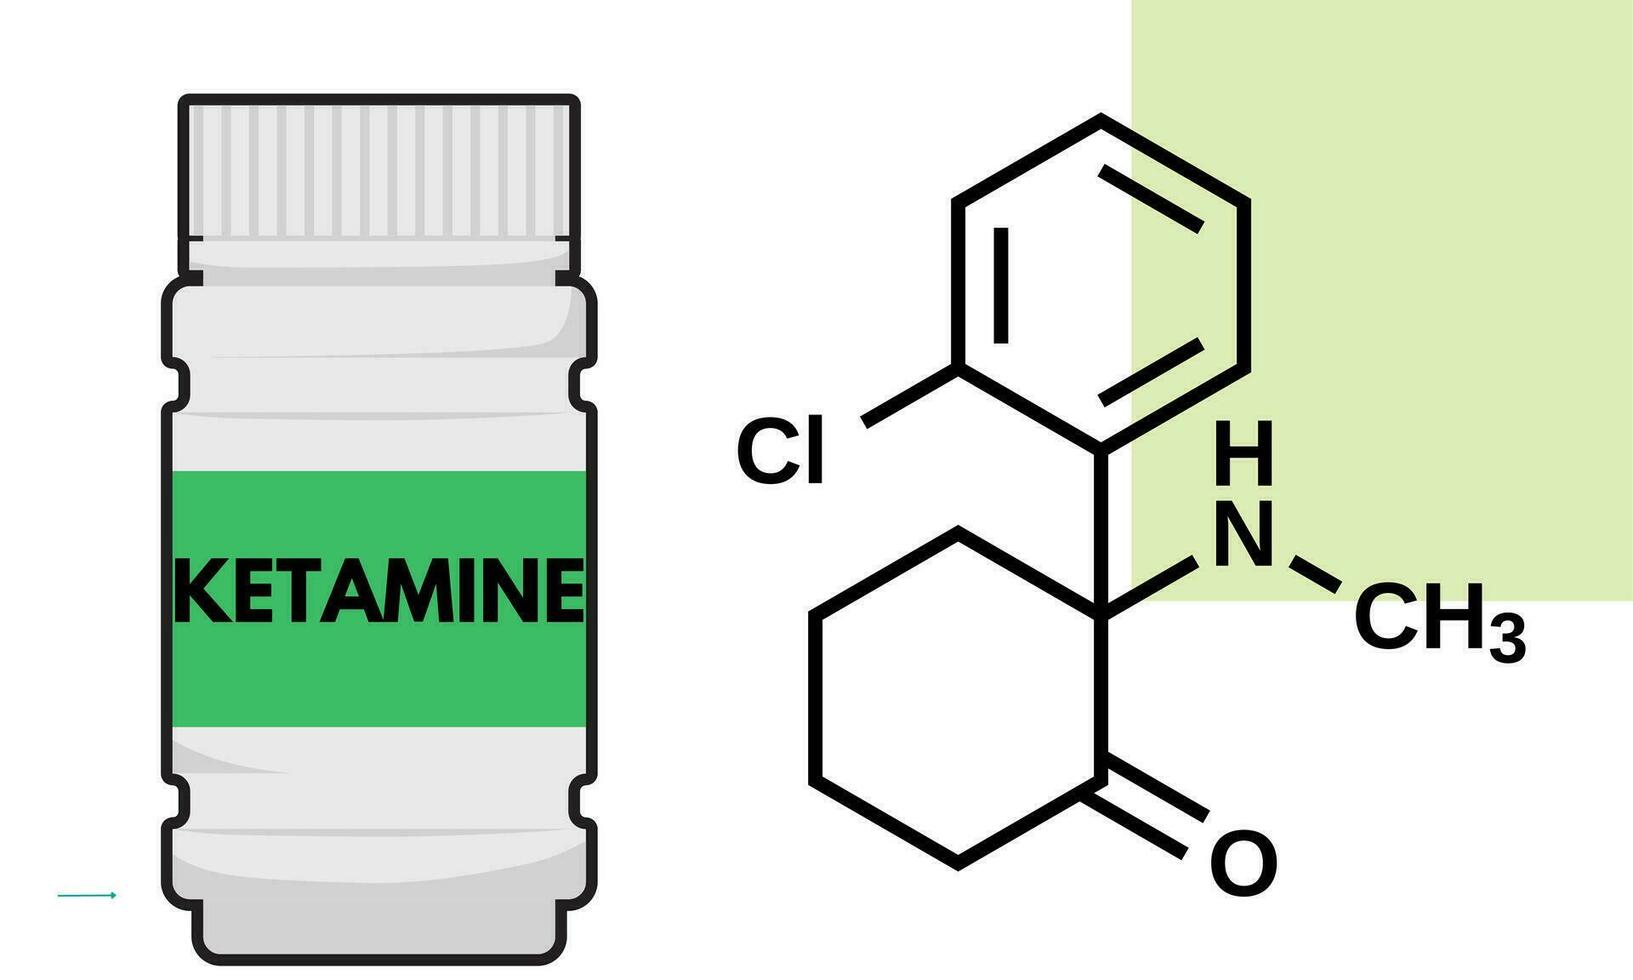 ketamine medisch fles van geneesmiddel dissociatief verdoving gebruikt voor inductie en onderhoud van anesthesie. vector illustratie